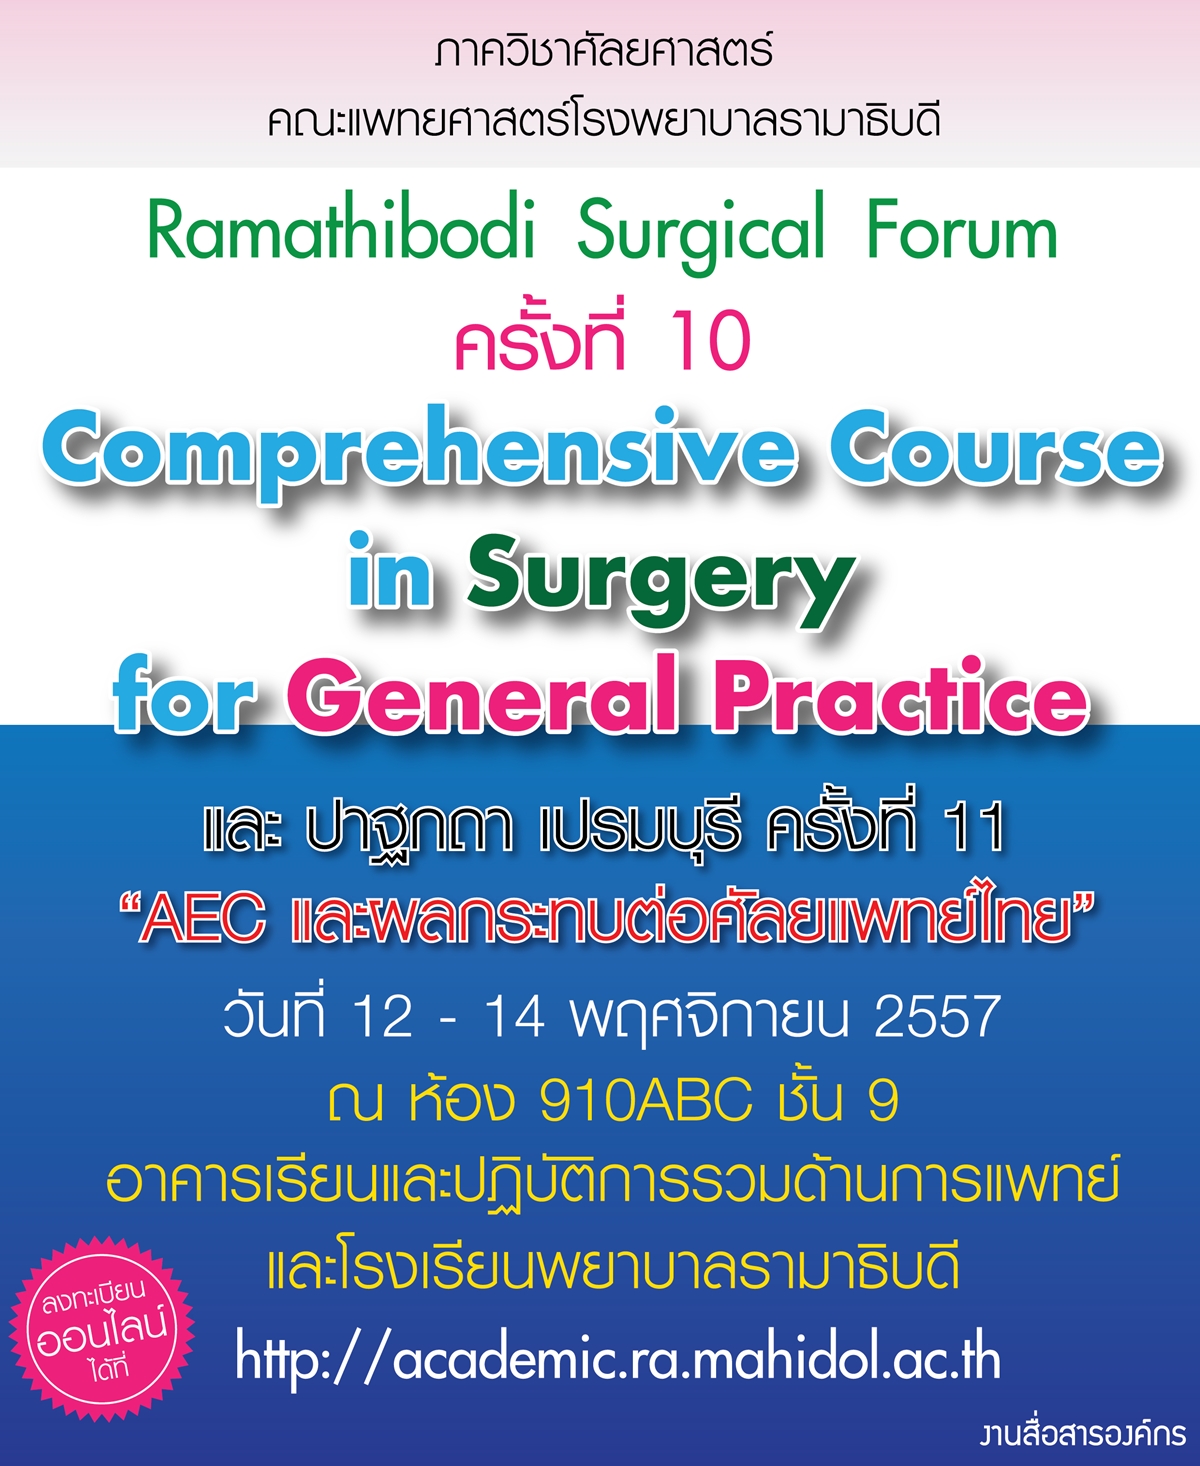 ประชุมวิชาการ Ramathibodi Surgical Forum ครั้งที่ 10 และ ปาฐกถา เปรมบุรี ครั้งที่ 11 